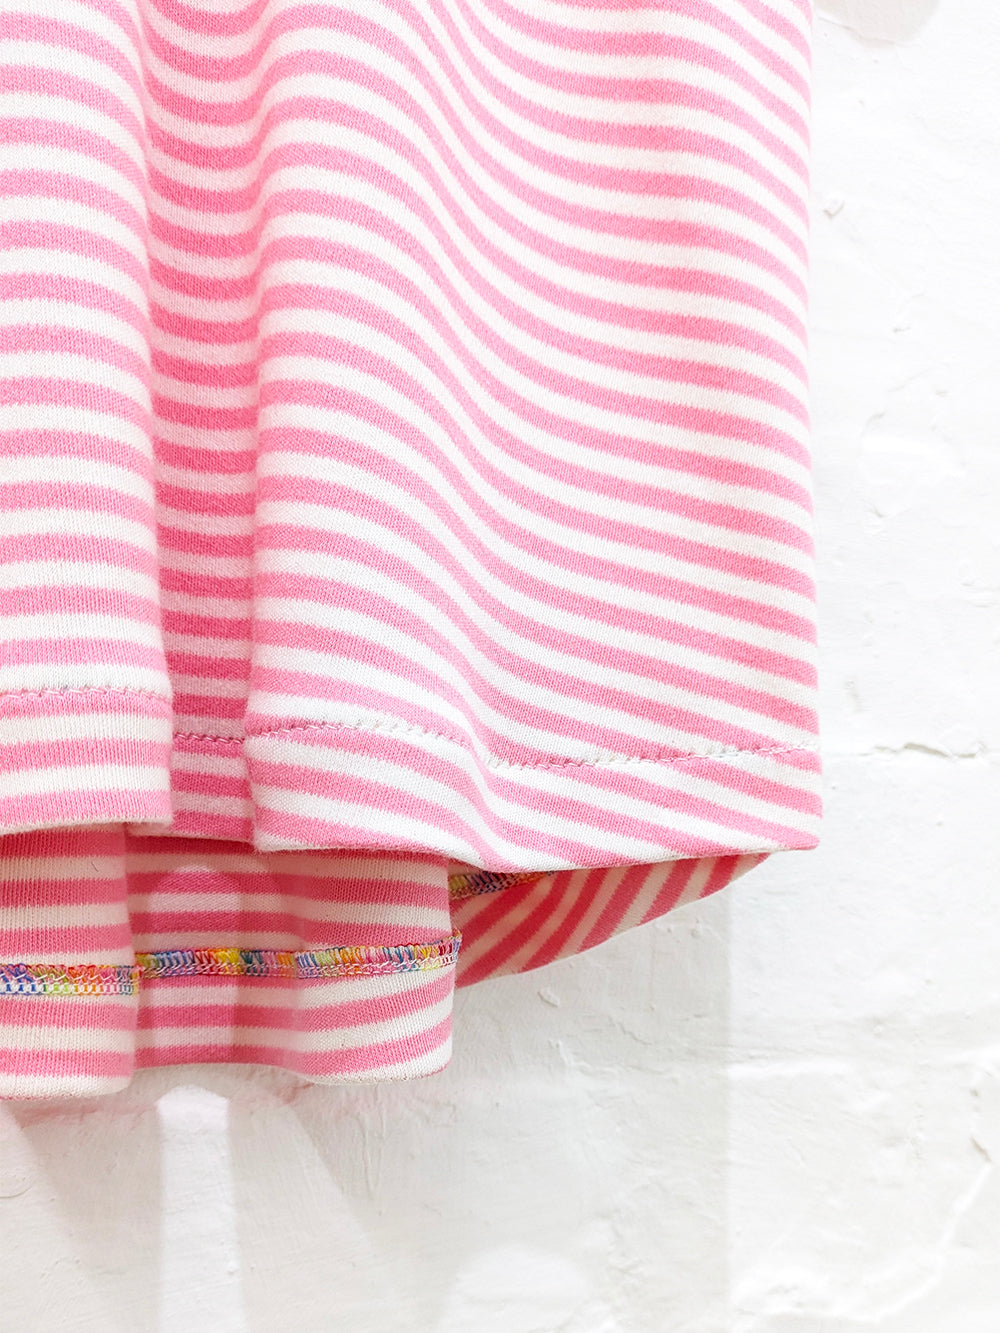 Pink Rainbow Stripe Tee-Pin Clothing-pinclothing.co.uk